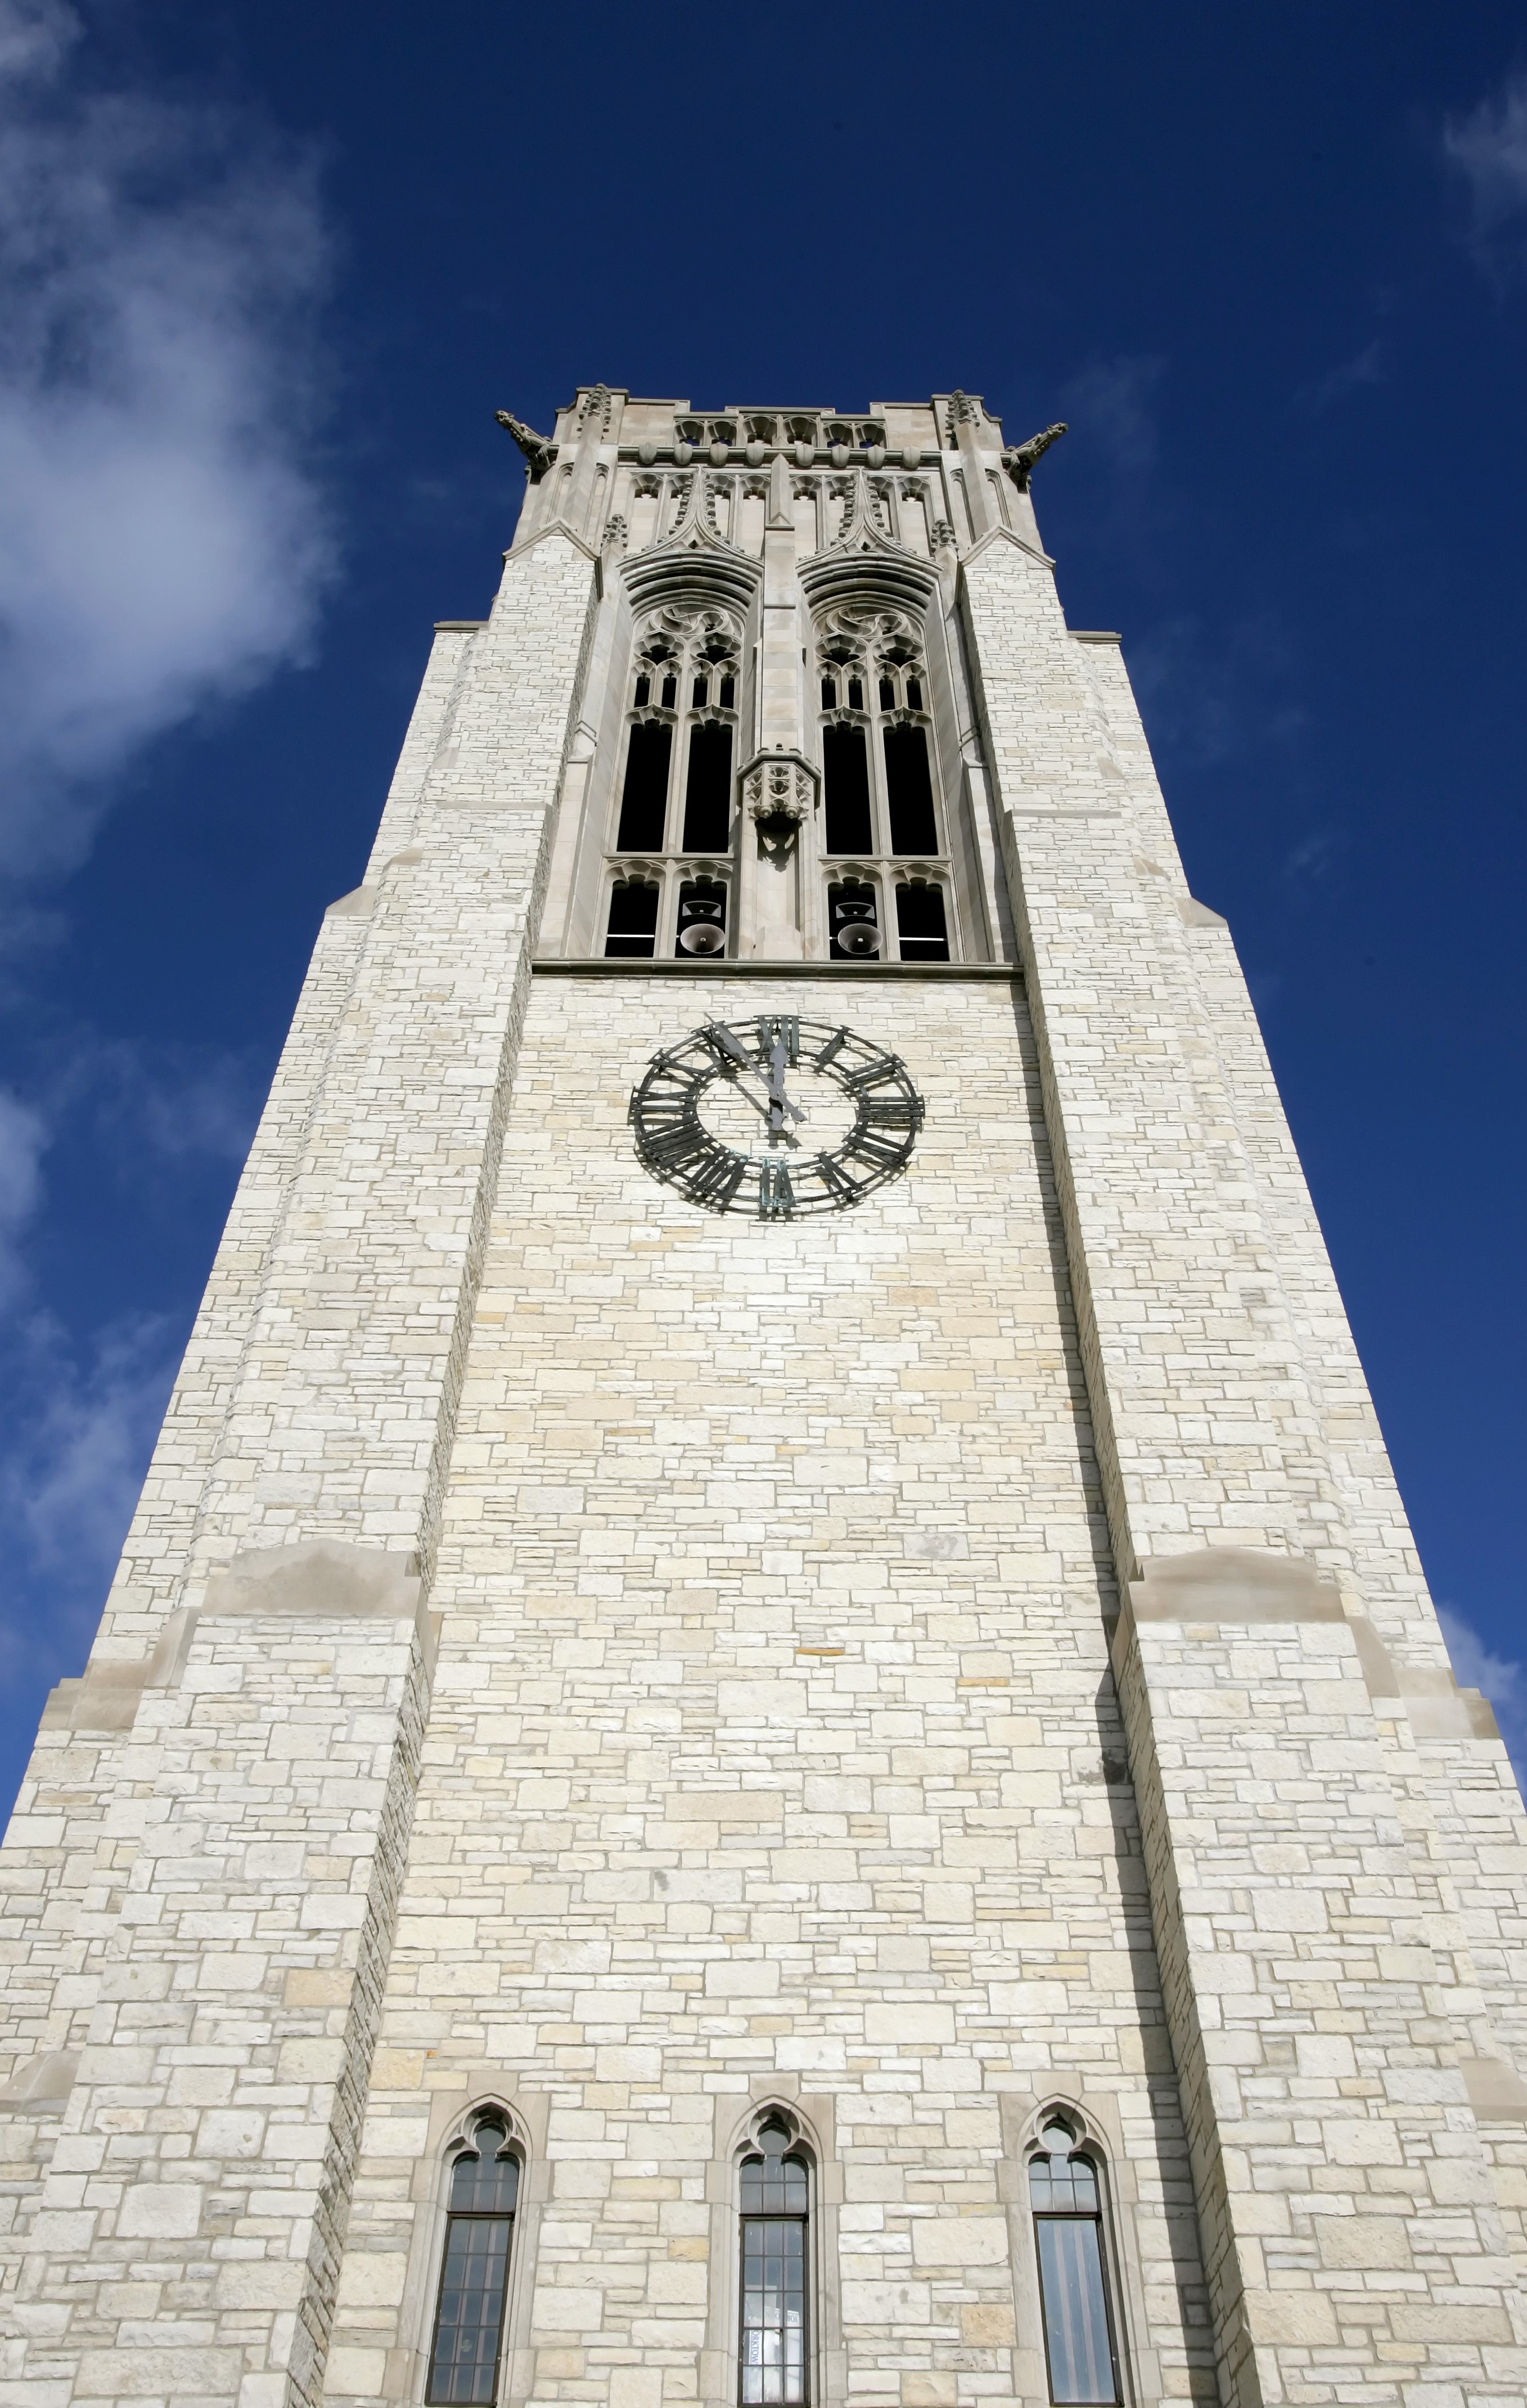 University Hall Tower